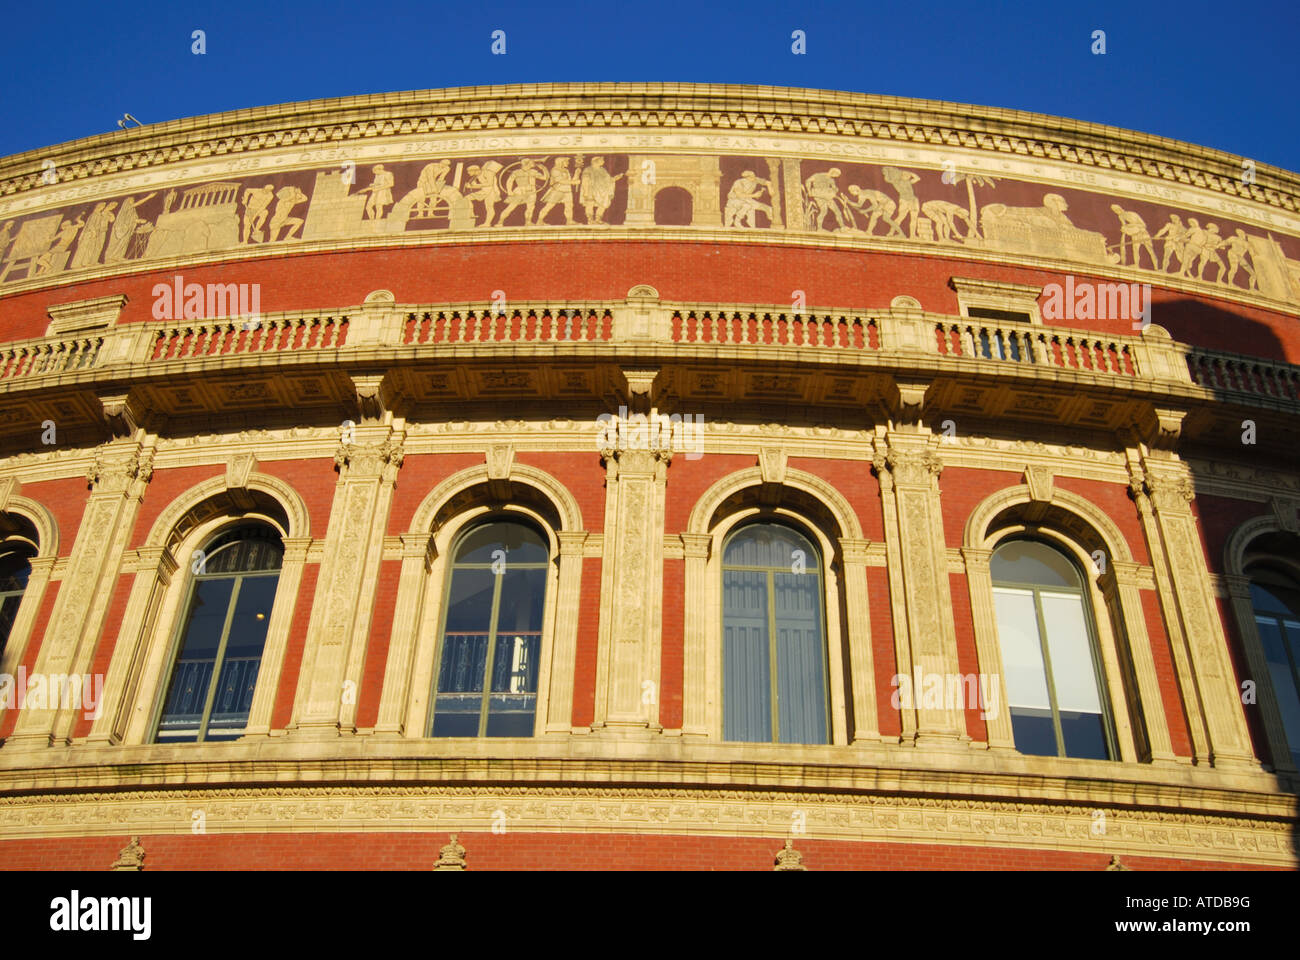 Vista esterna al tramonto, Royal Albert Hall, Kensington, London, England, Regno Unito Foto Stock